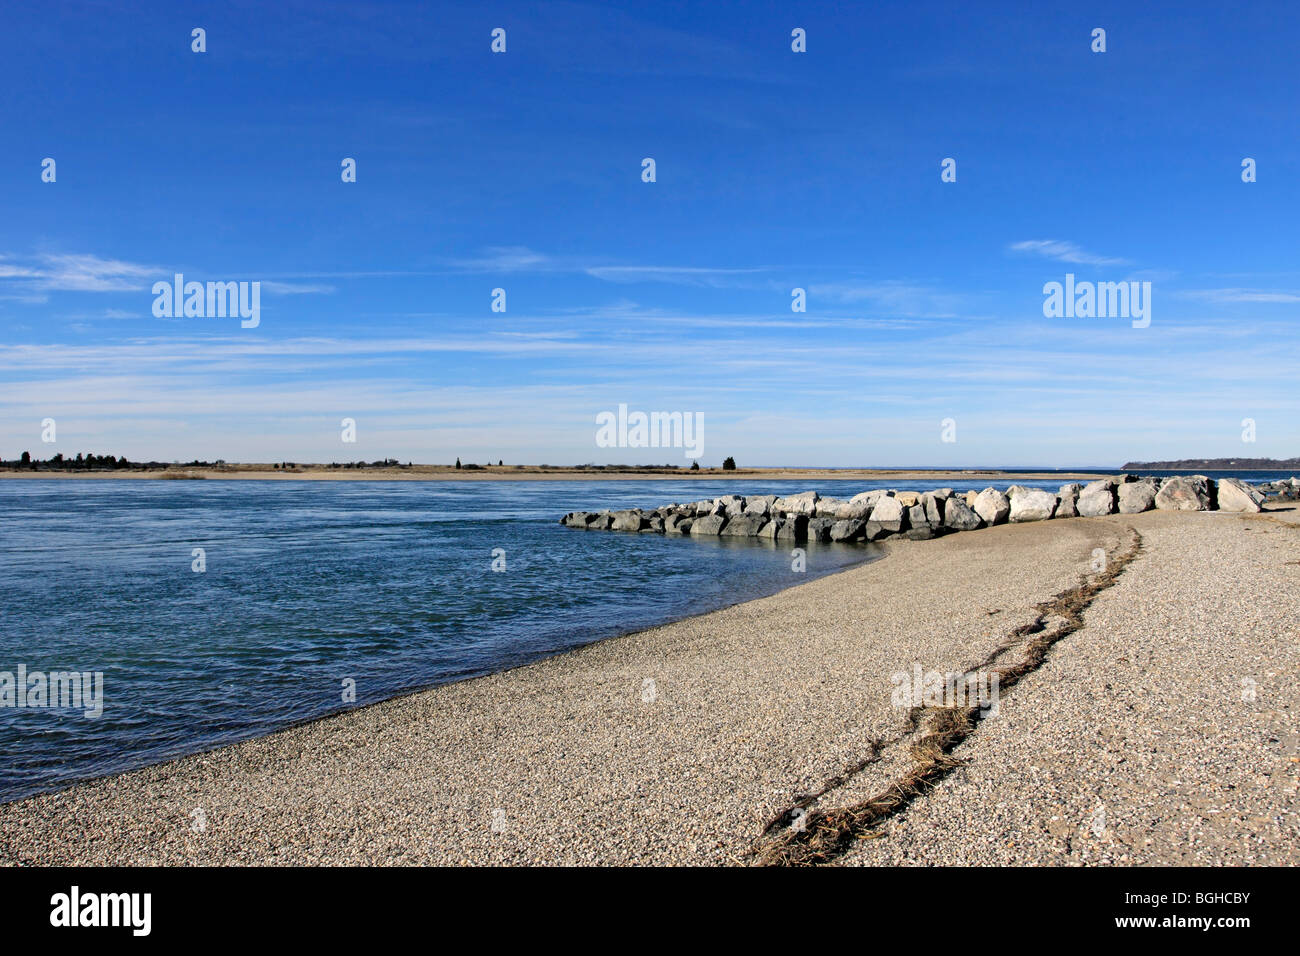 West Meadow Beach at Stony Brook harbor, Long Island, NY Stock Photo